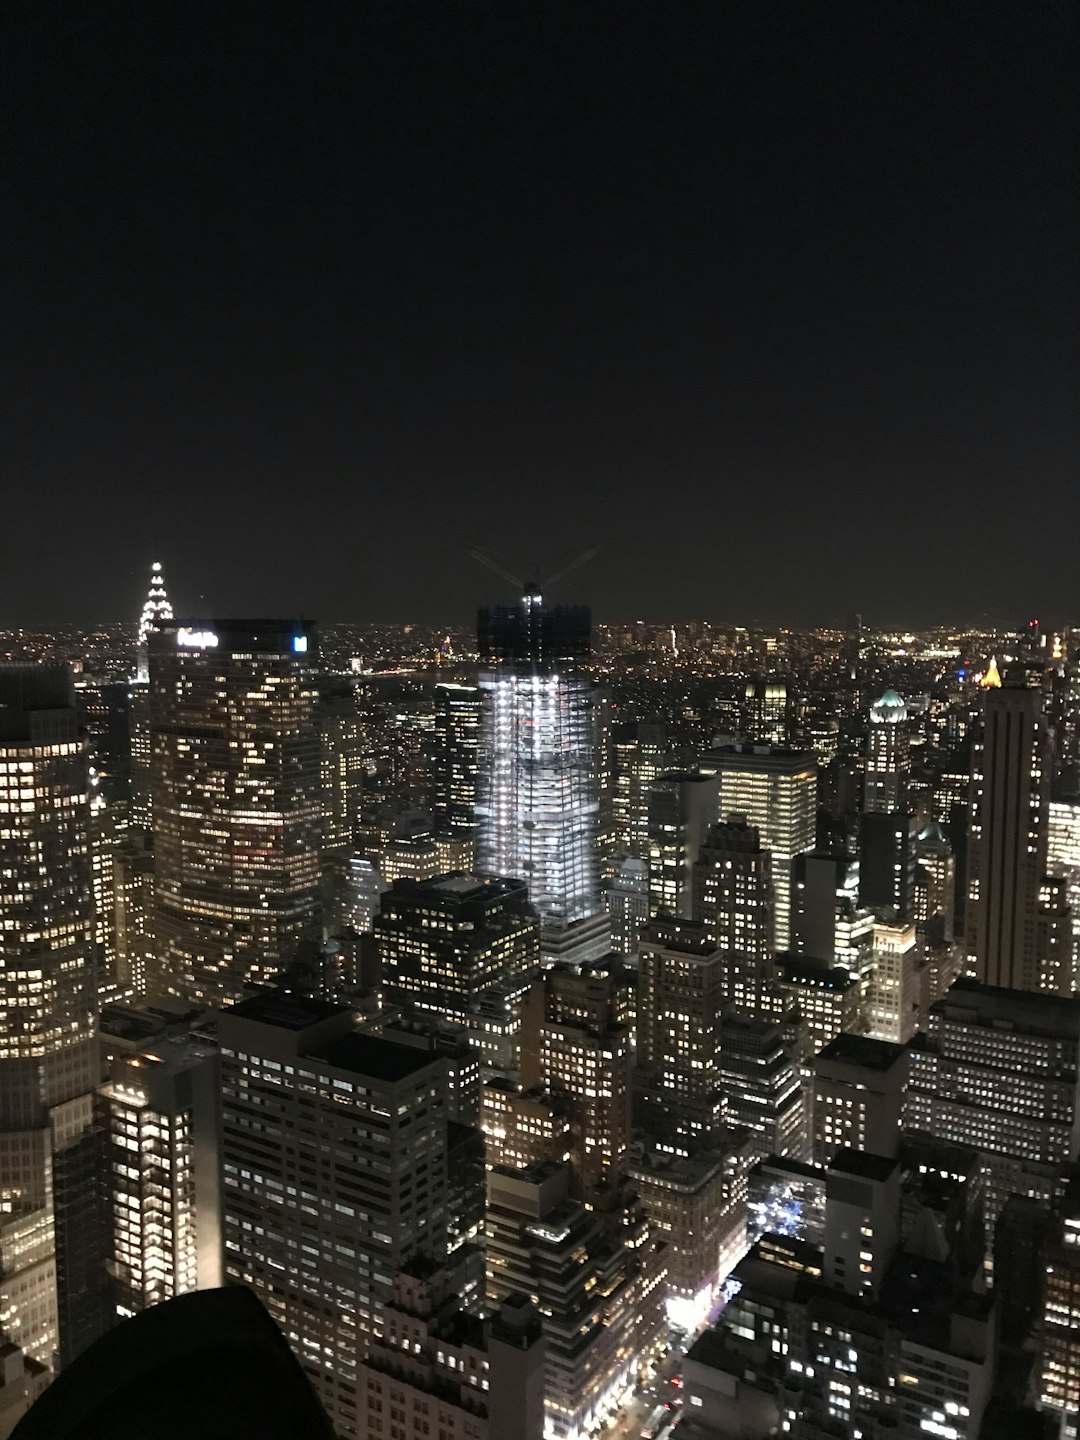 Landmark photo spot Rockefeller Center Empire State Building